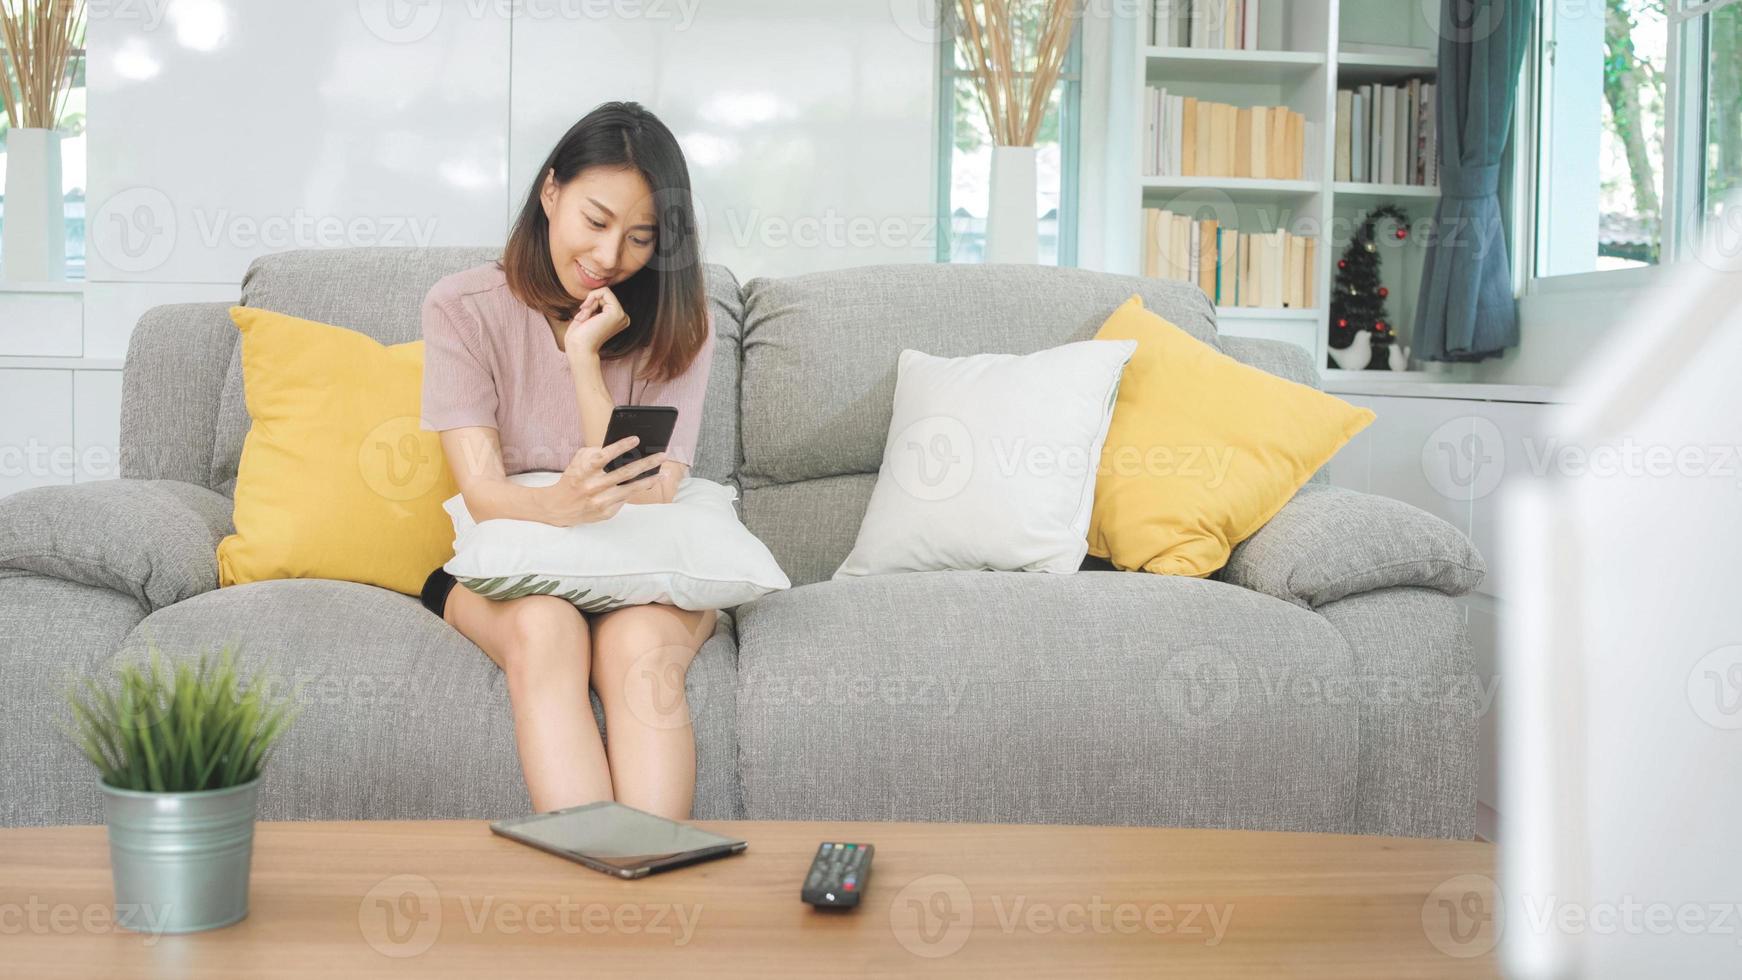 ung asiatisk kvinna som använder smartphone som kontrollerar sociala medier som känner sig lycklig leende medan hon ligger i soffan när hon kopplar av i vardagsrummet hemma. livsstil latin och spansktalande etnicitet kvinnor hemma koncept. foto